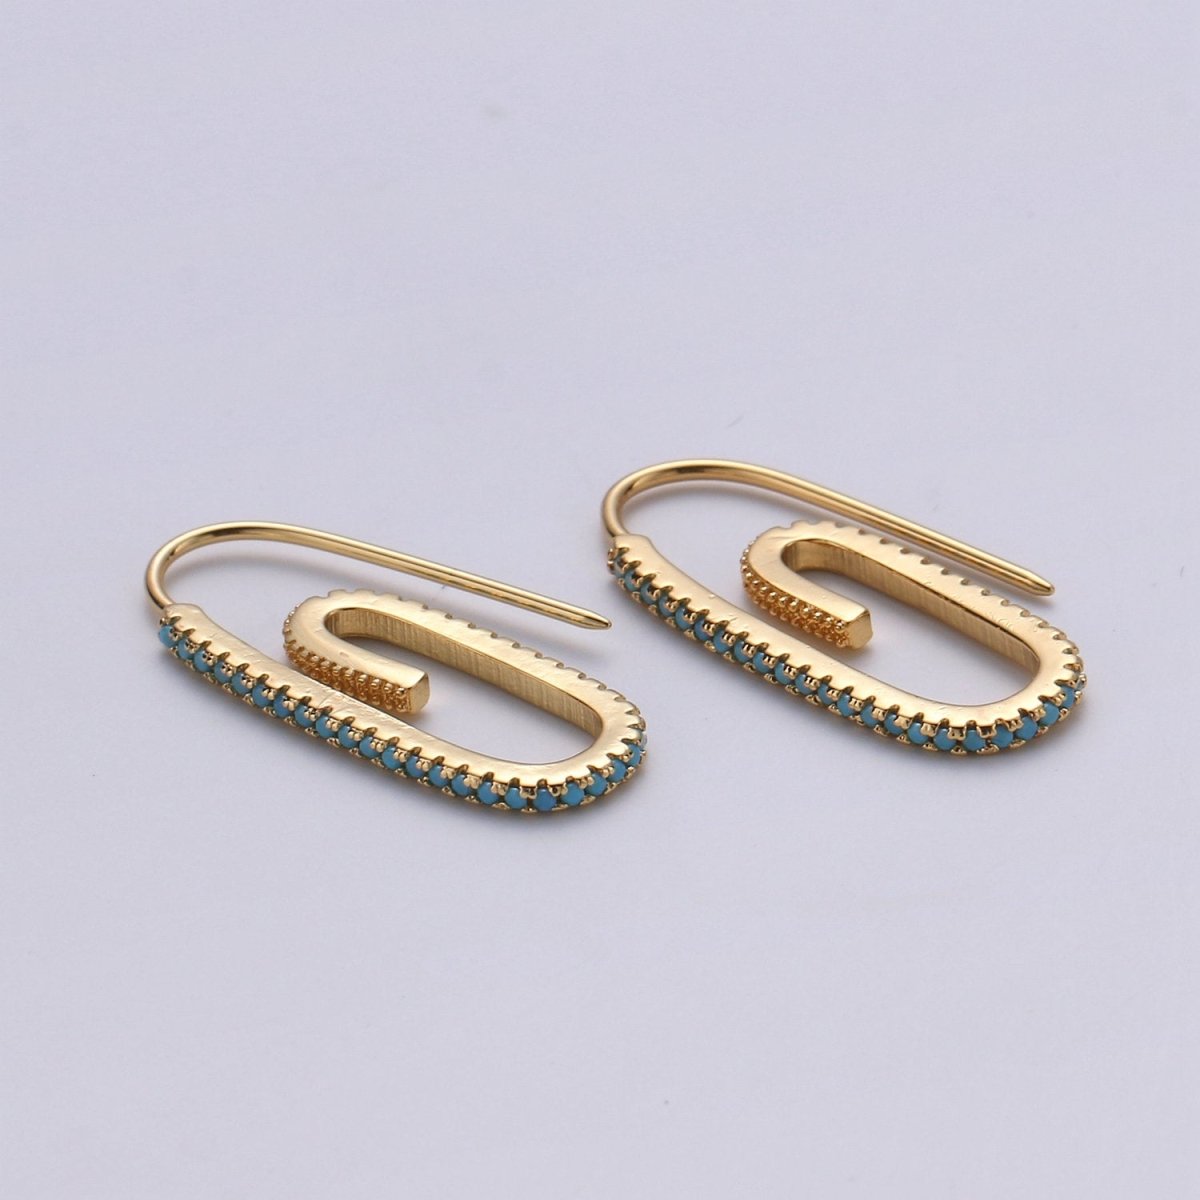 Paper Clip Earrings, Micro Pave Paper Clip Earrings, Trend Jewelry, Gold Hoop Earrings Clear, Green Black Blue Purple CZ Earring K-633 K-636 - K-638 - DLUXCA